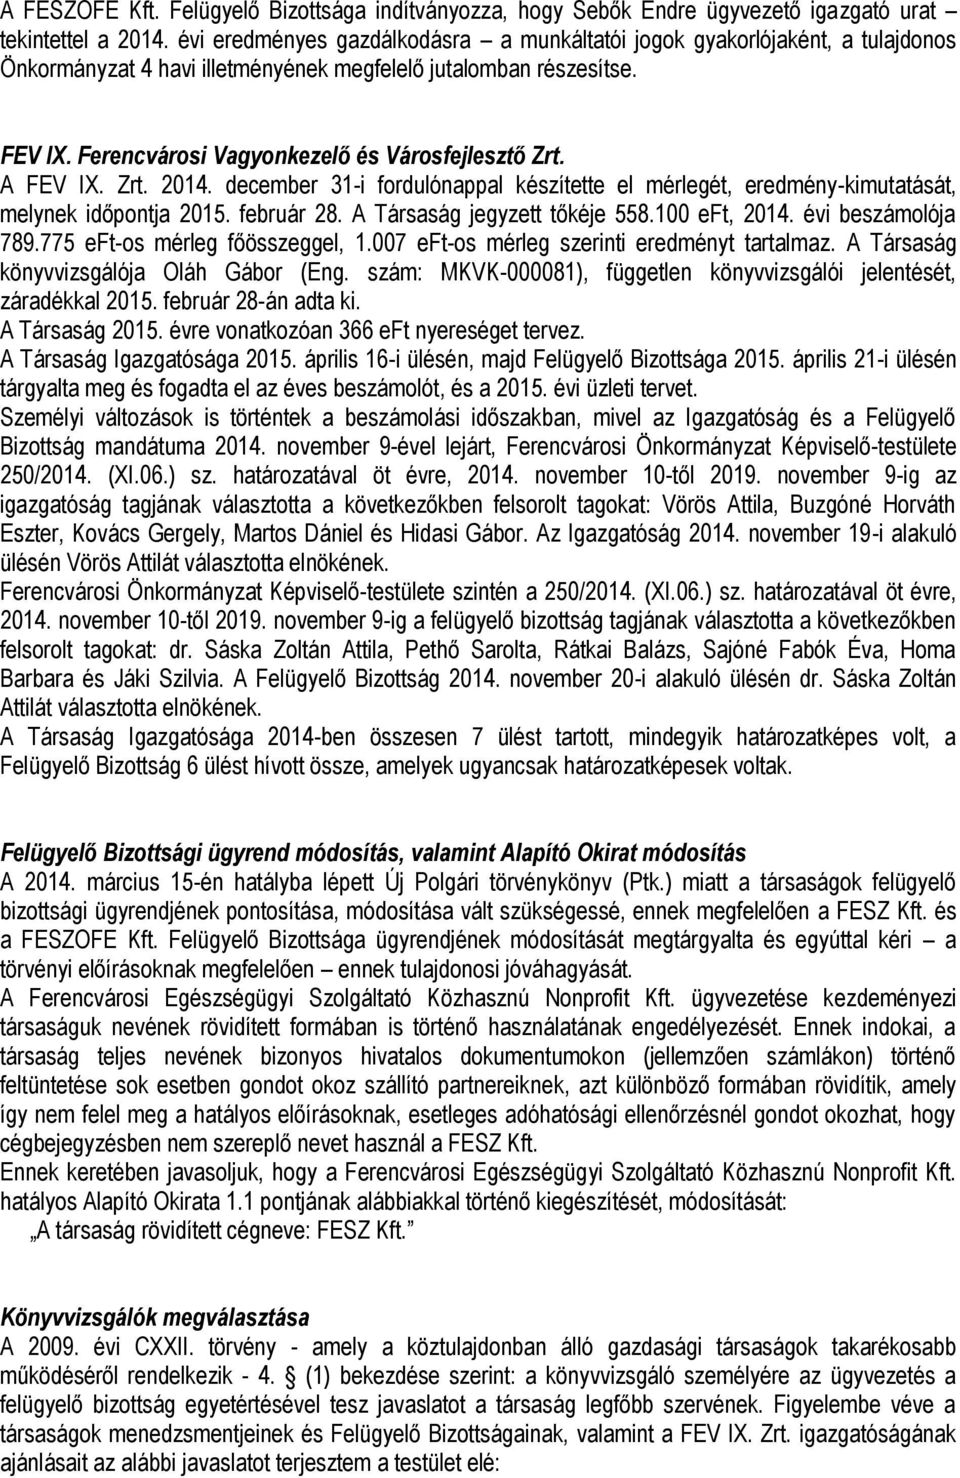 Ferencvárosi Vagyonkezelő és Városfejlesztő Zrt. A FEV IX. Zrt. 2014. december 31-i fordulónappal készítette el mérlegét, eredmény-kimutatását, melynek időpontja 2015. február 28.